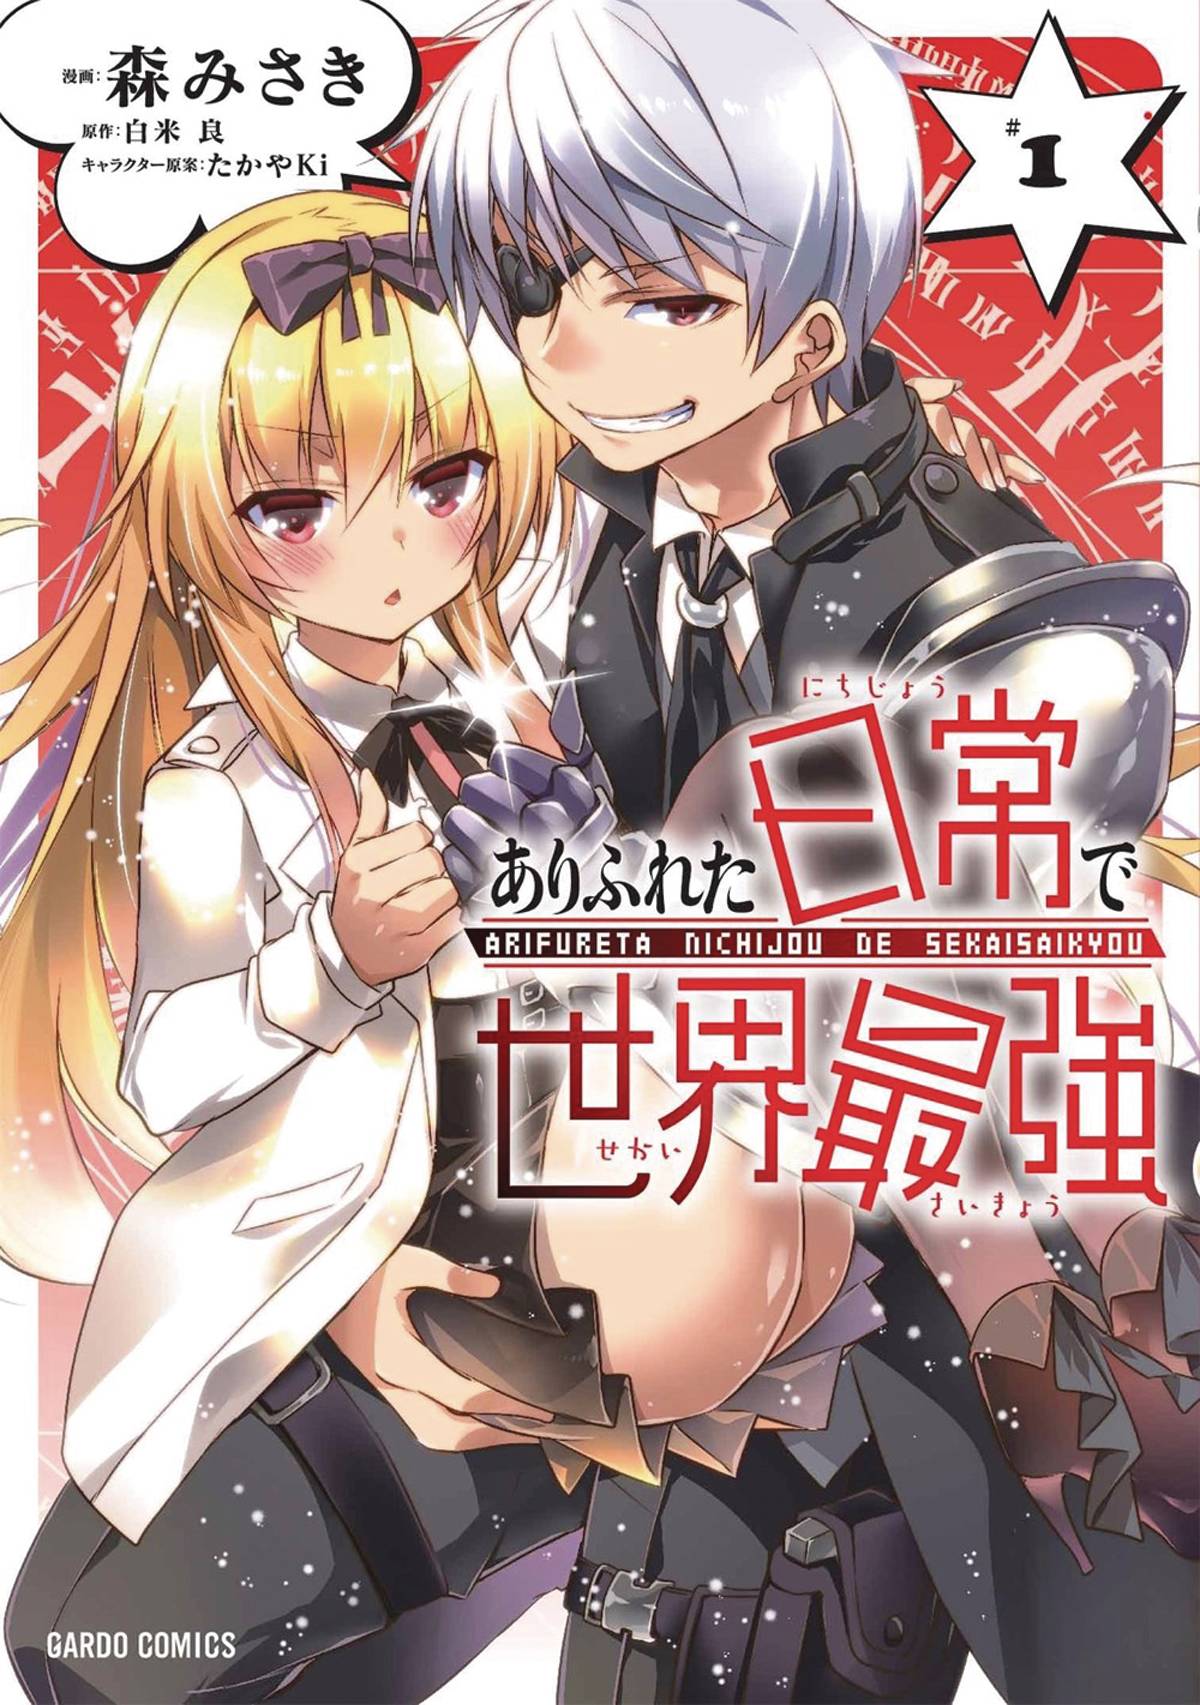 Adult isekai manga